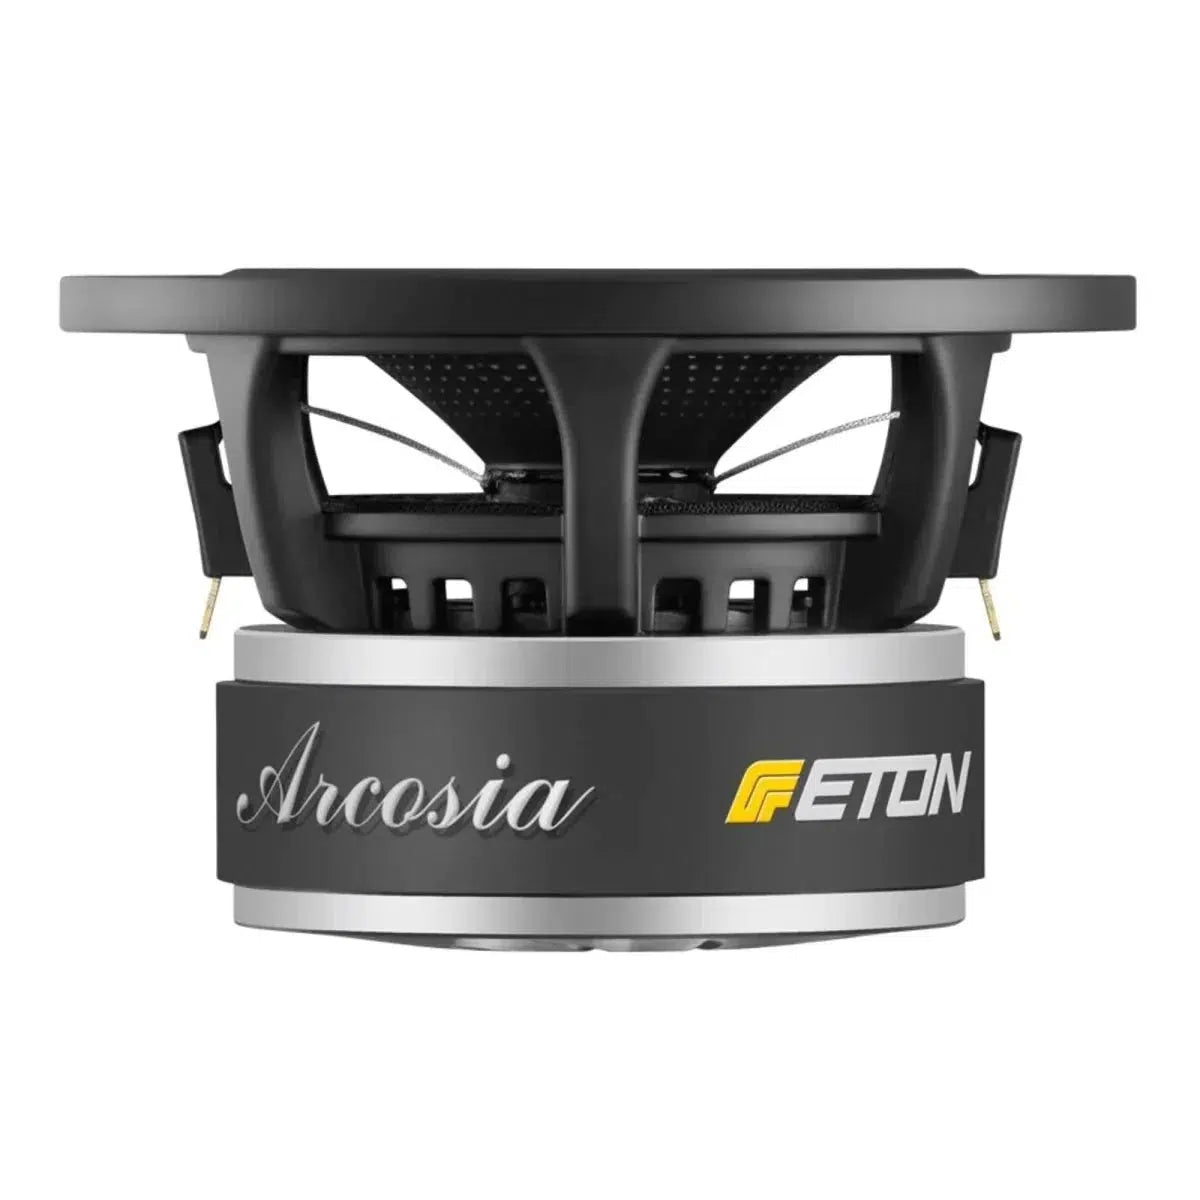 ETON-Arcosia 4-218-4" (10cm) conductor de graves-medios-Masori.de